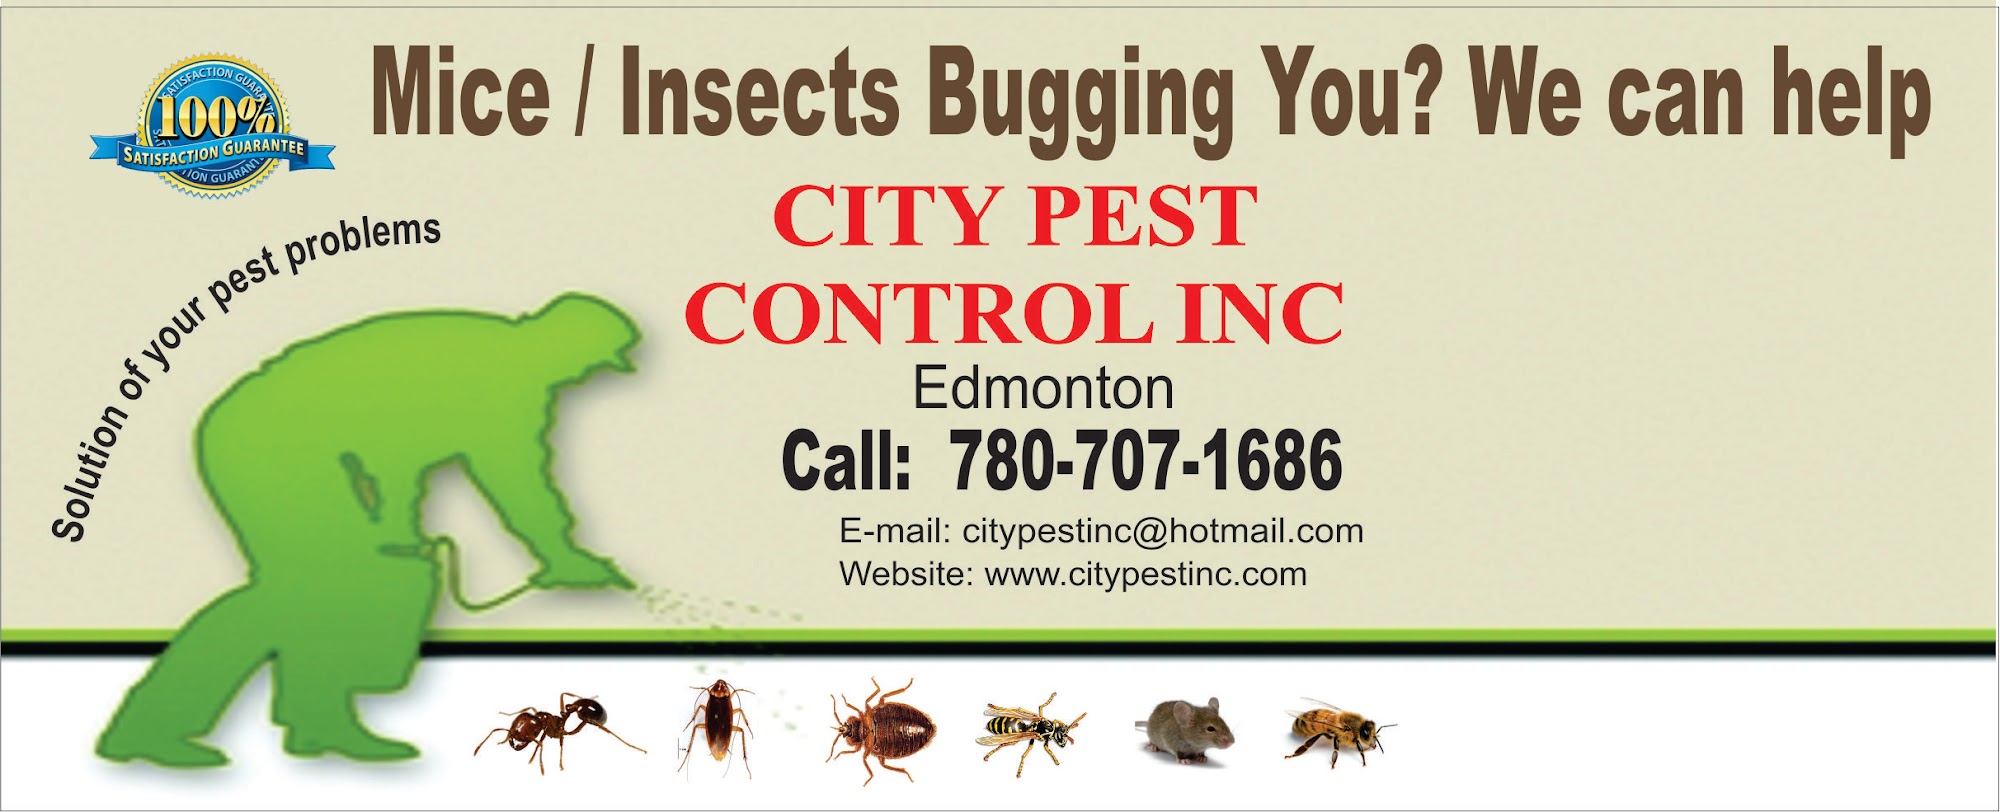 City Pest Control Inc